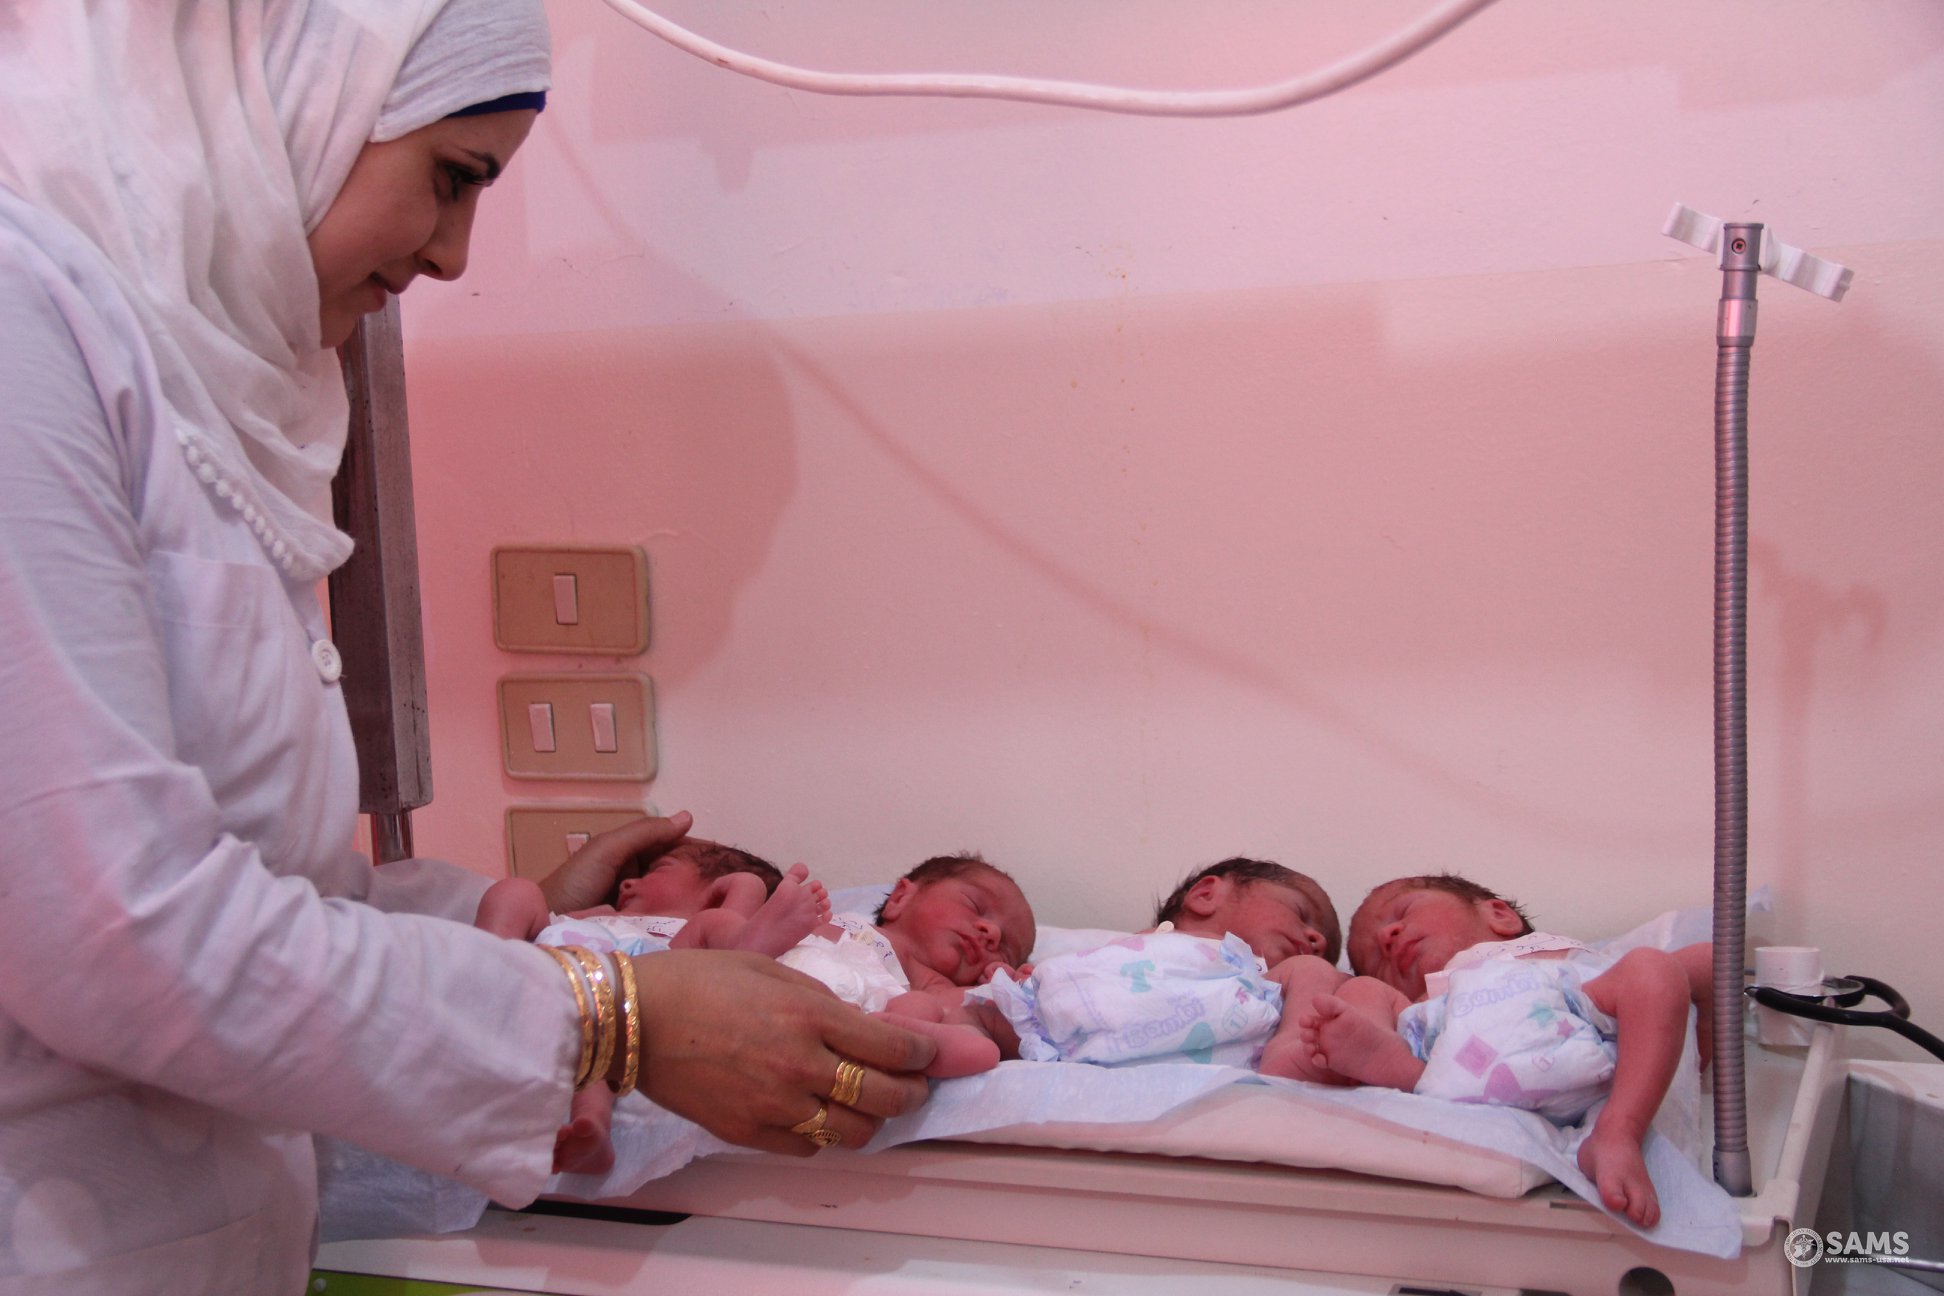 التوأم الرباعي بعد ولادتهم في مشفى المعرة بإدلب - 17 من أيار 2018 (سامز)